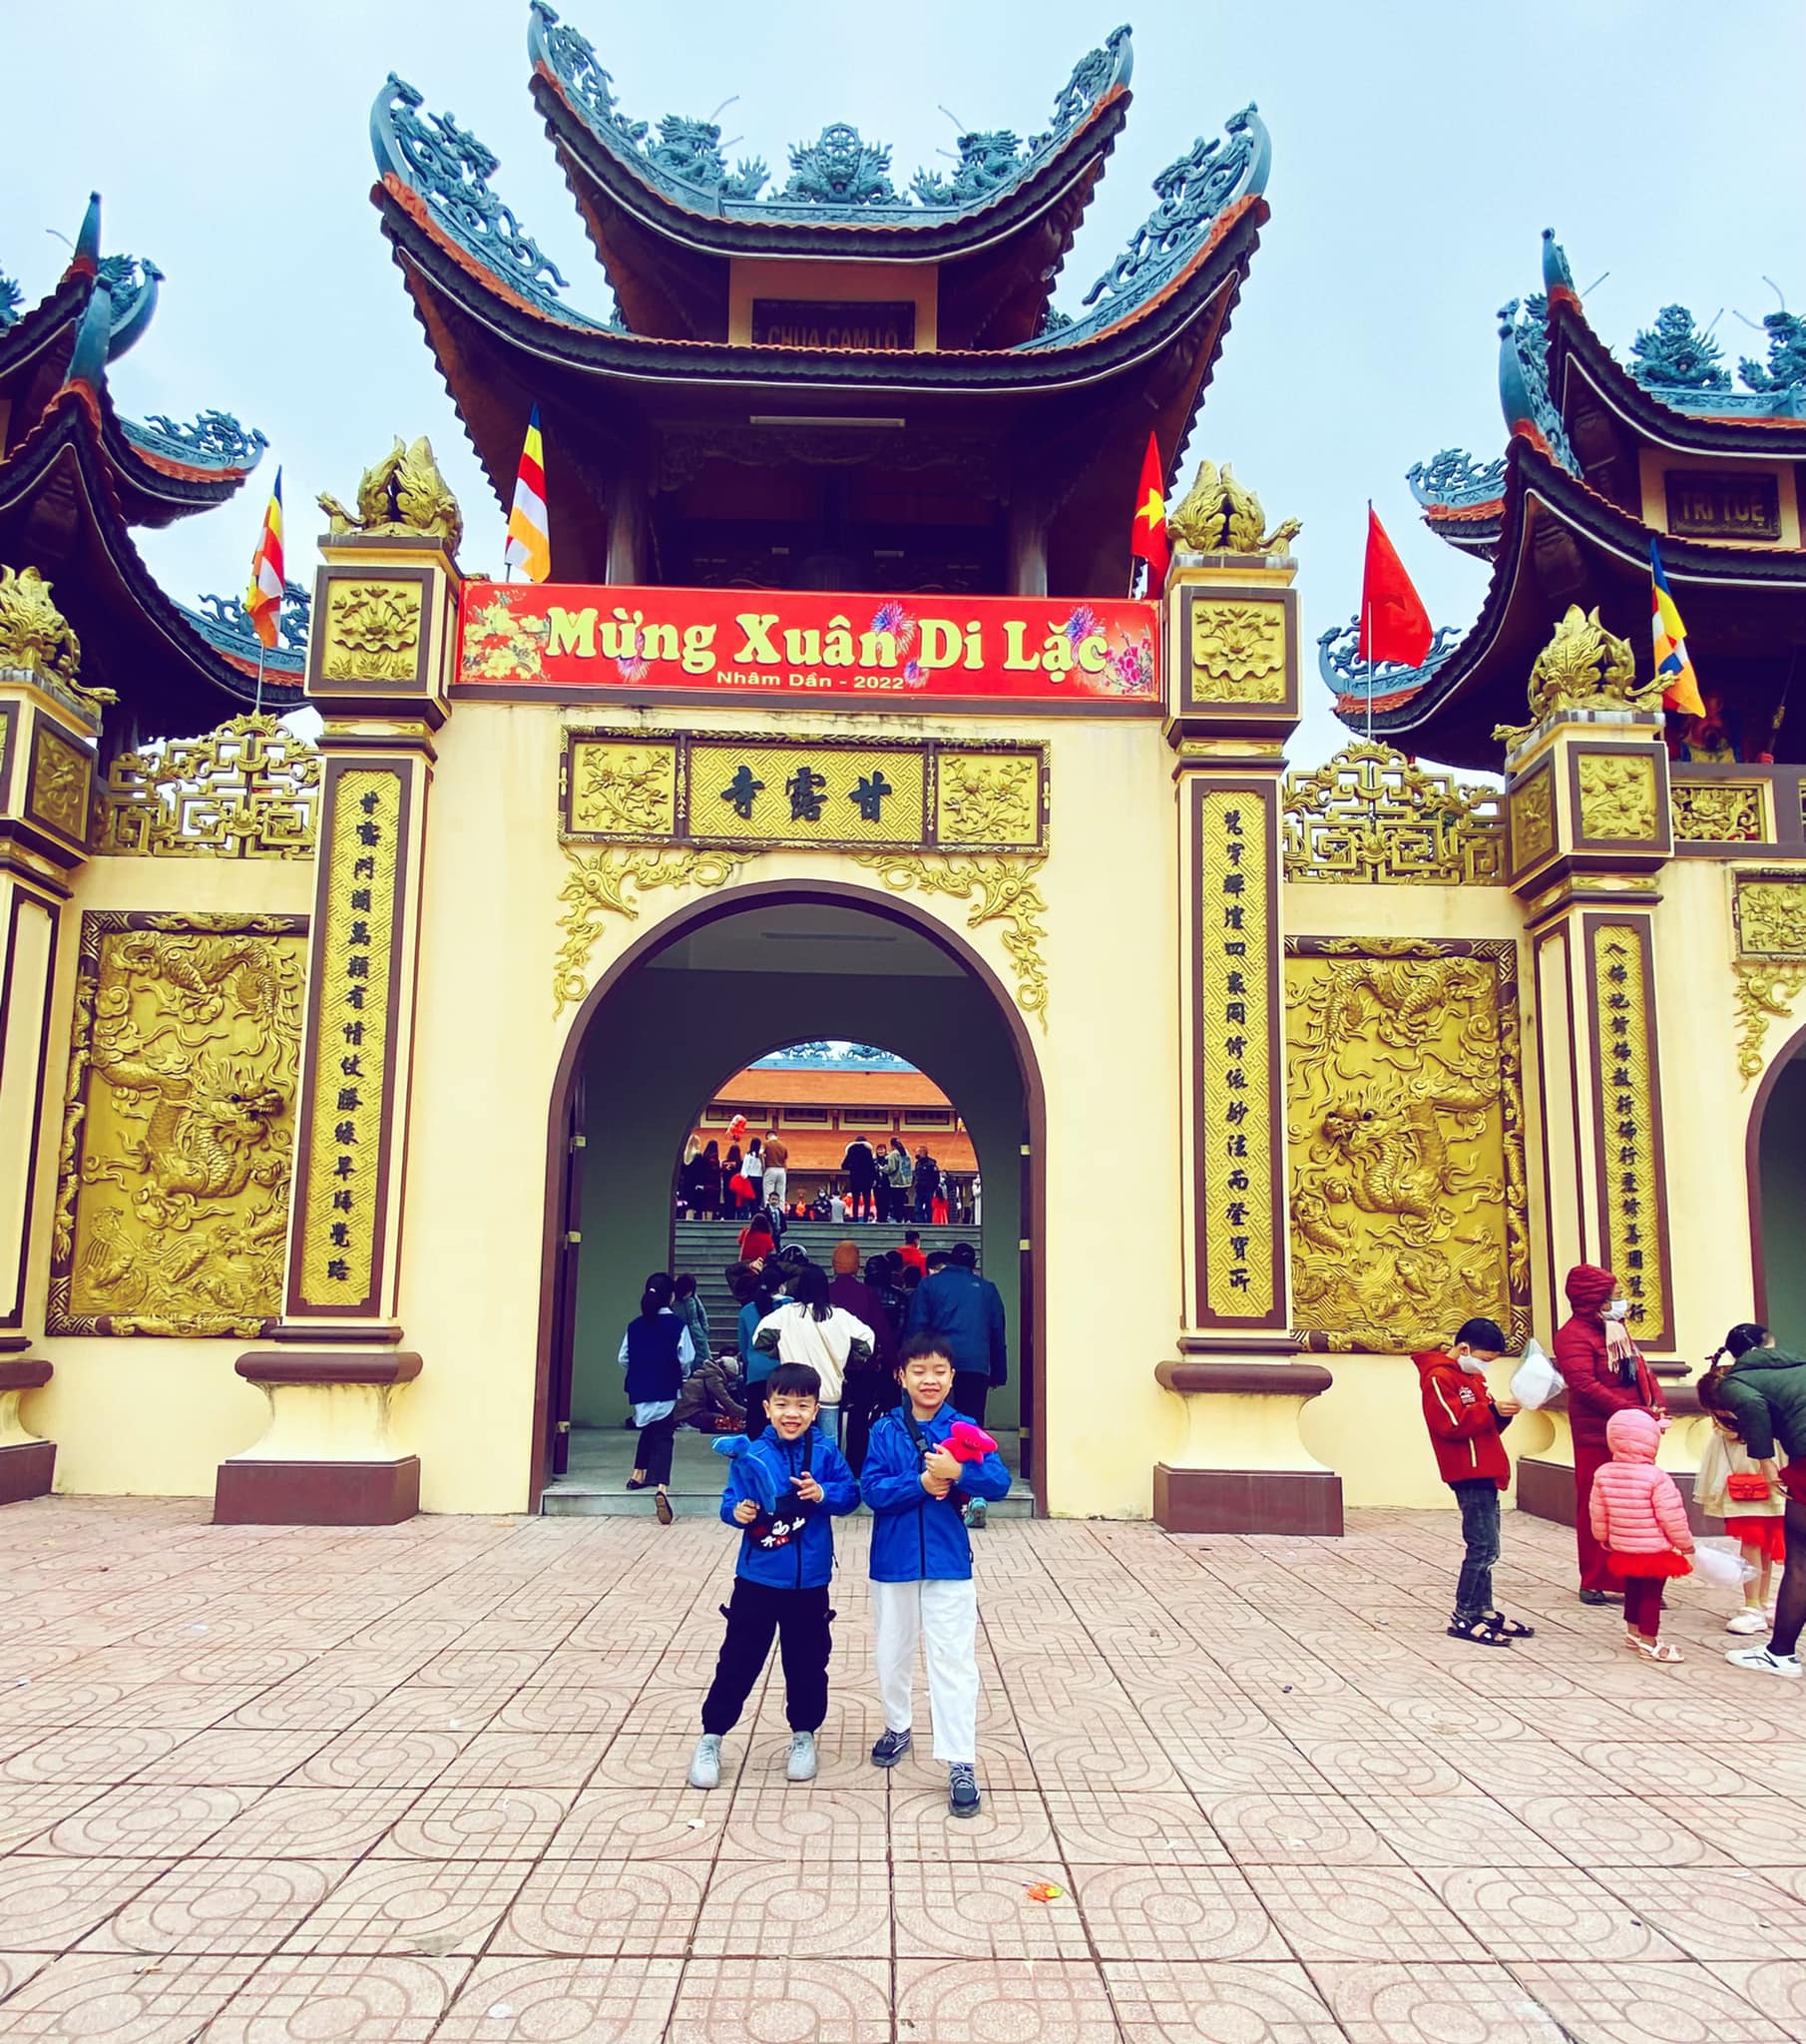 Chùa Cam Lộ tọa lạc tại thị trấn Cam Lộ, Quảng Trị là địa điểm du xuân thu hút nhiều người